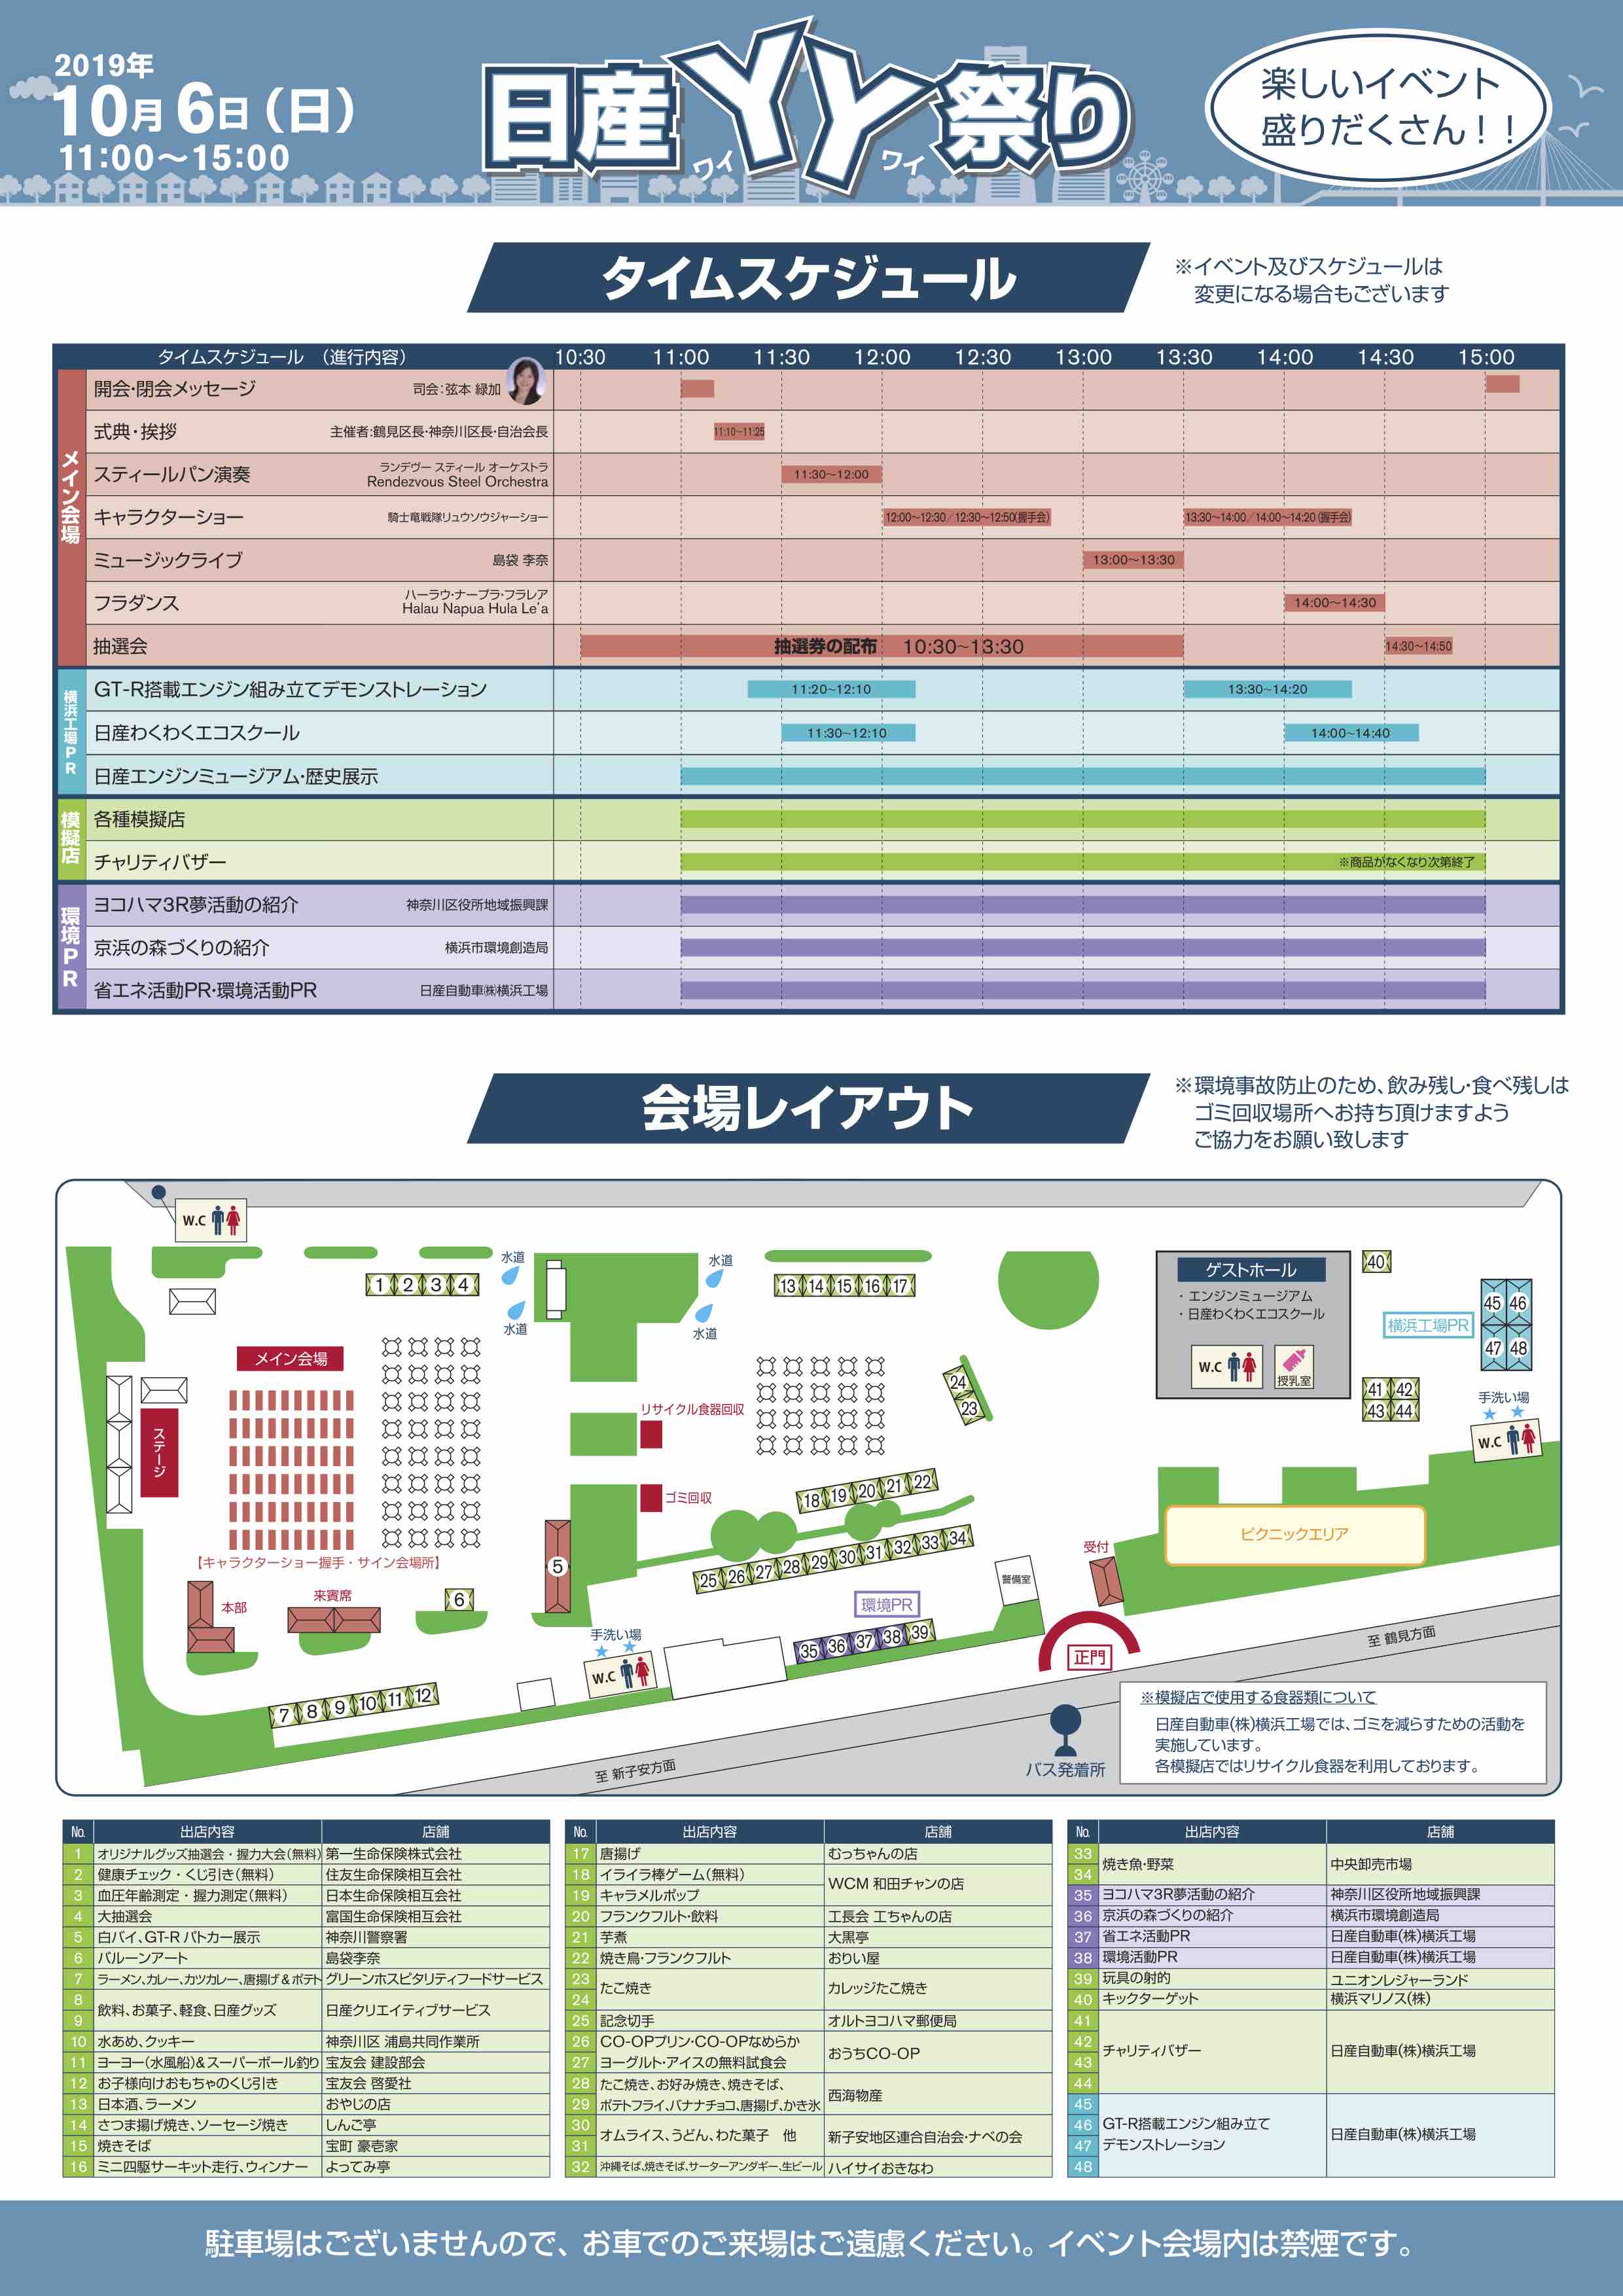 関東地域 イベント情報 10月6日 日 日産自動車横浜工場にて 日産yy祭り を開催いたします Newscast